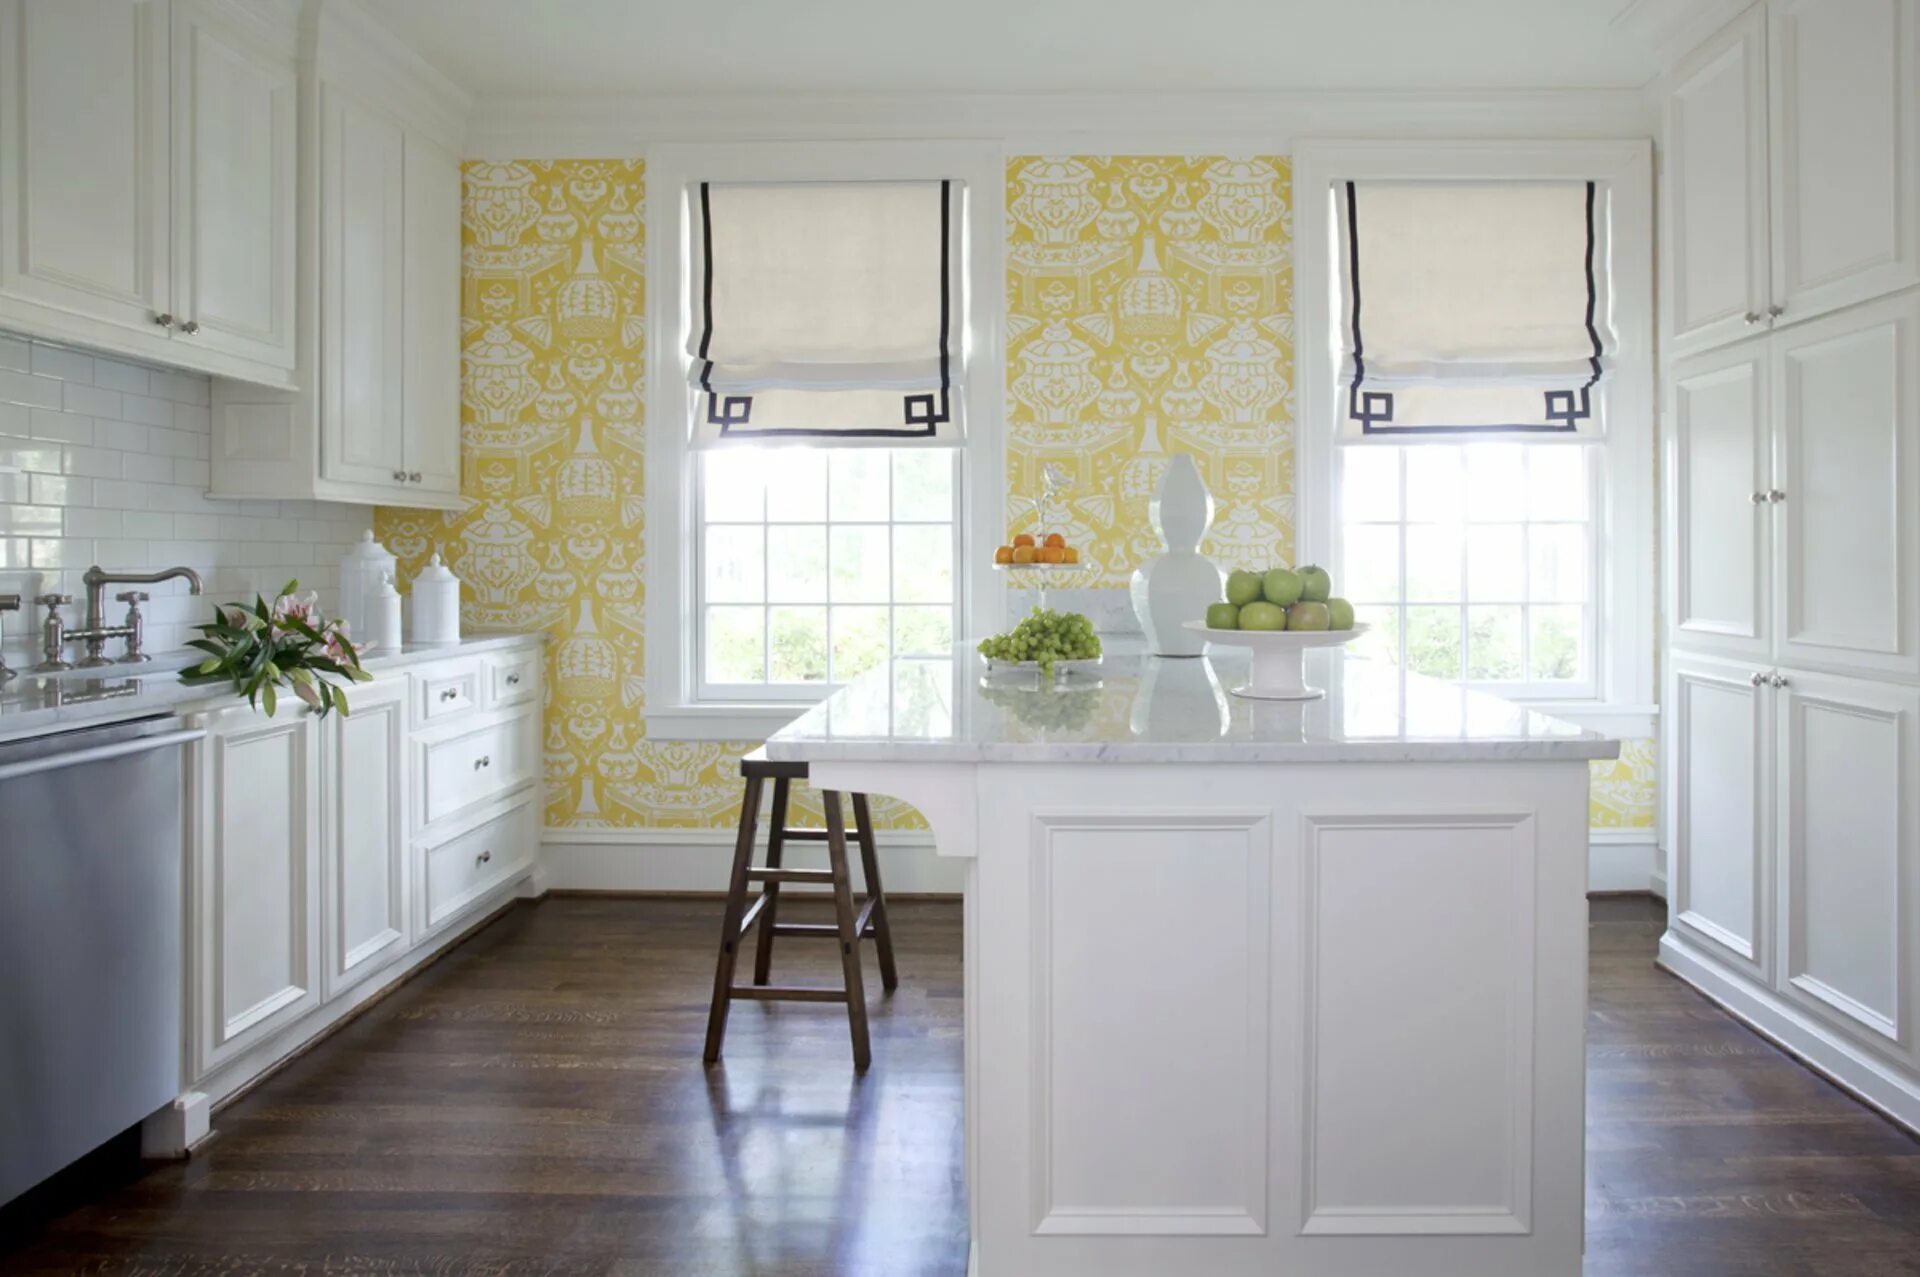 Фото обоев белой кухни. Обои в интерьере кухни. Обои для белой кухни в интерьере. Расцветка обоев для кухни. Цвет стен для белой кухни.